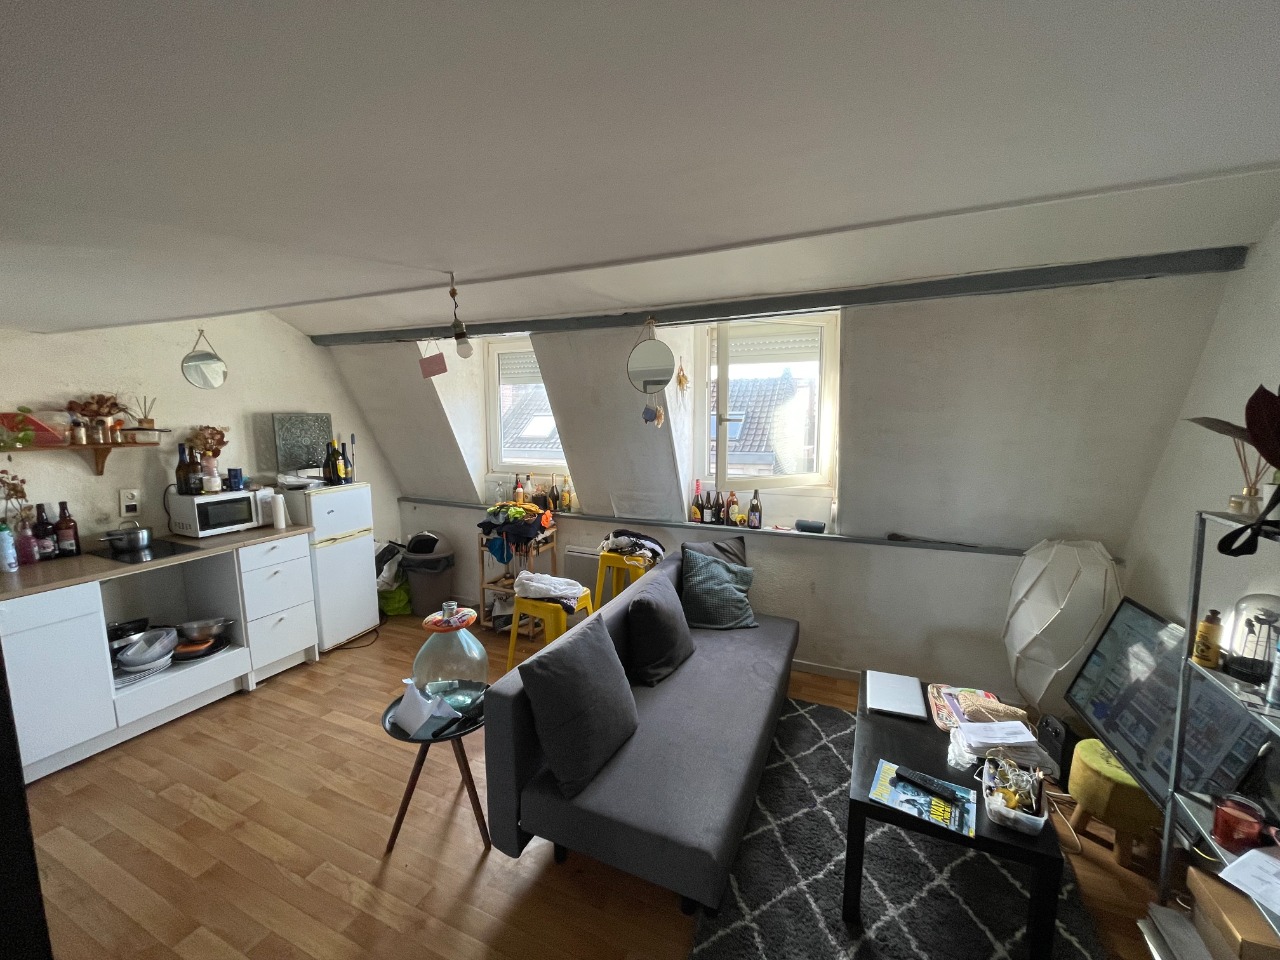 Vente appartement 59000 Lille - Gambetta - Joli studio avec mezzanine